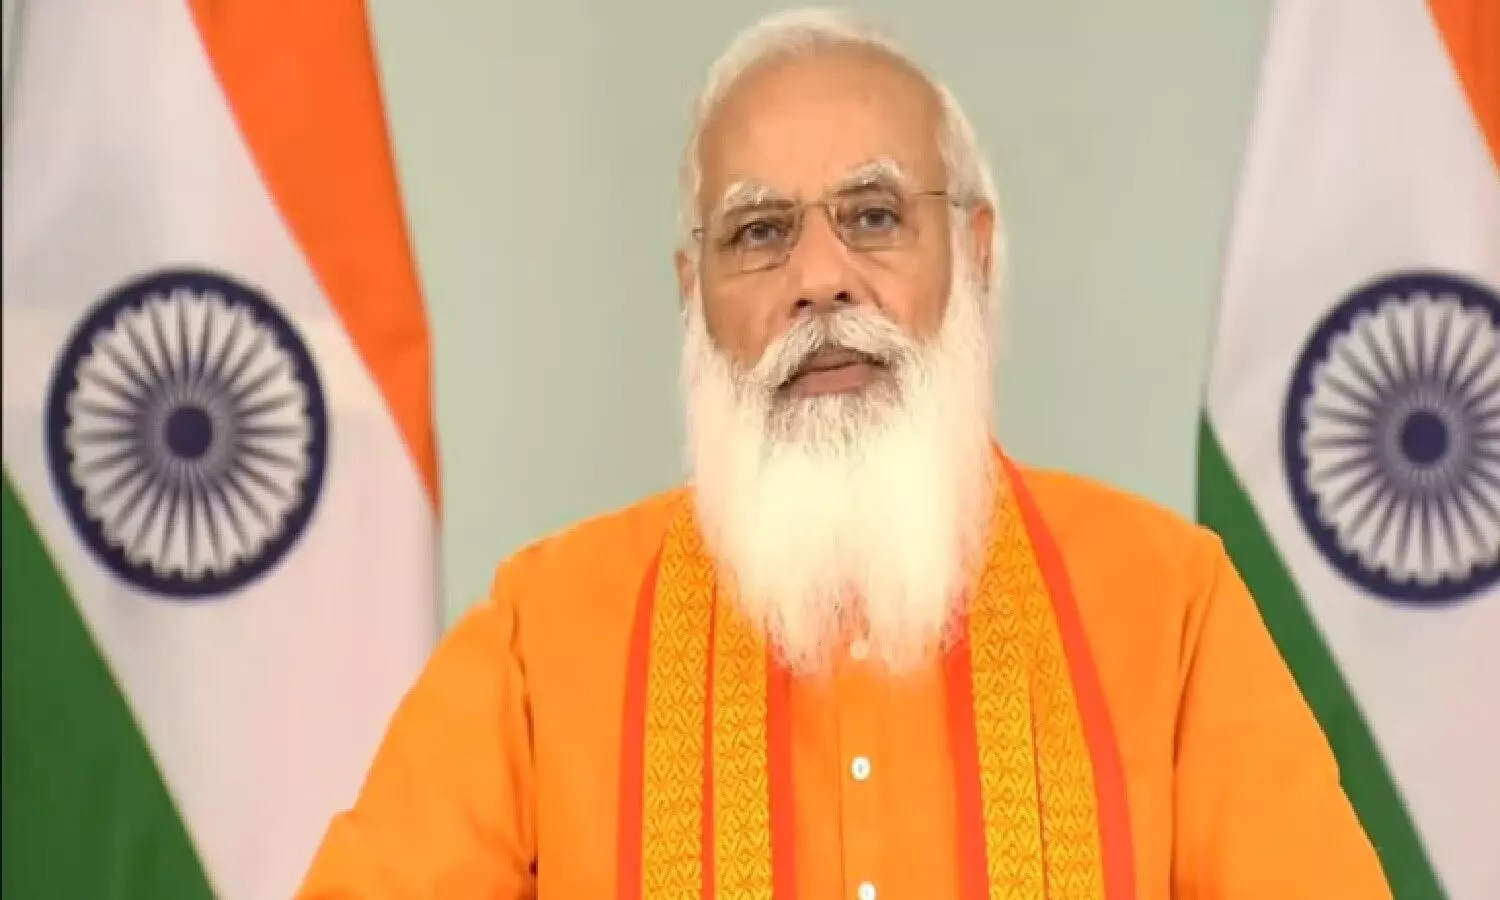 Yoga Day 2021: योग दिवस पर प्रधानमंत्री मोदी का संबोधन Live देखें यहां